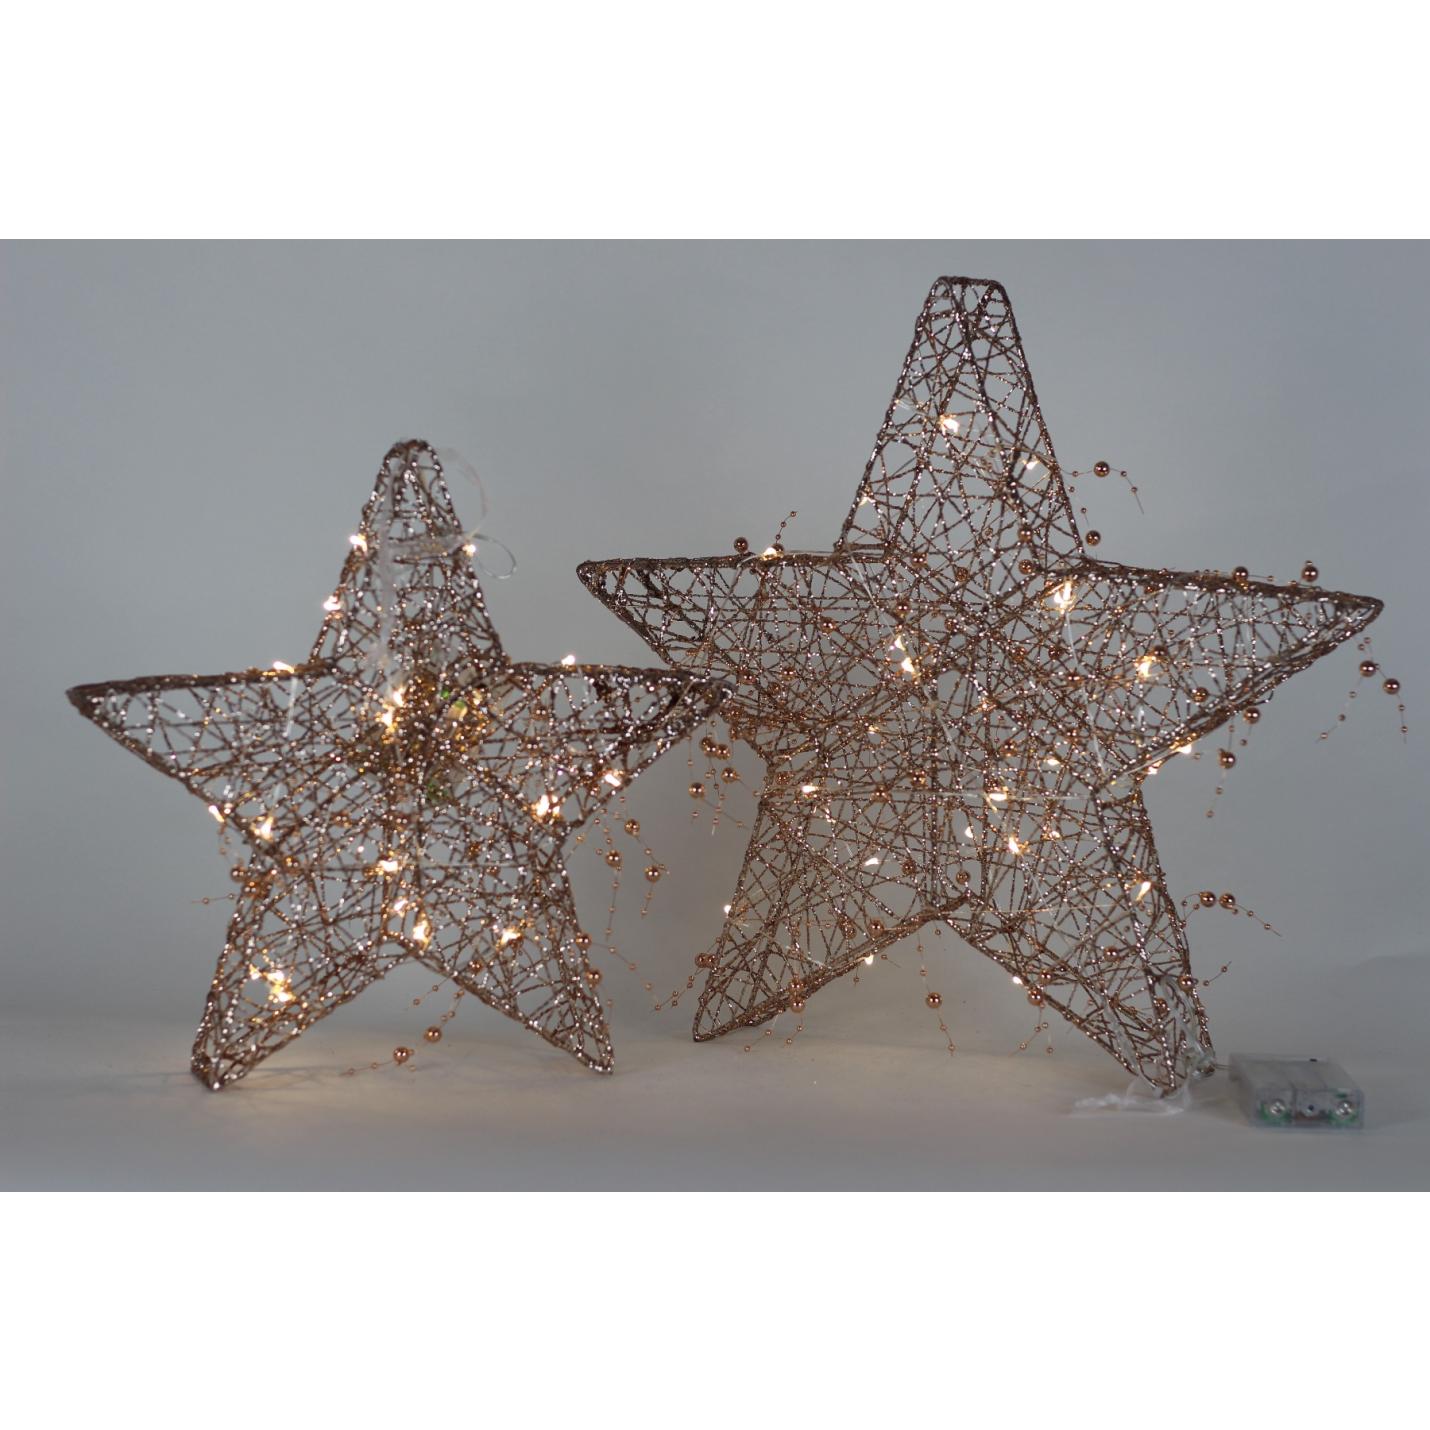 Kerstster - Draadster- 40cm- Goud/glitter/parels met 30 warm witte LEDs